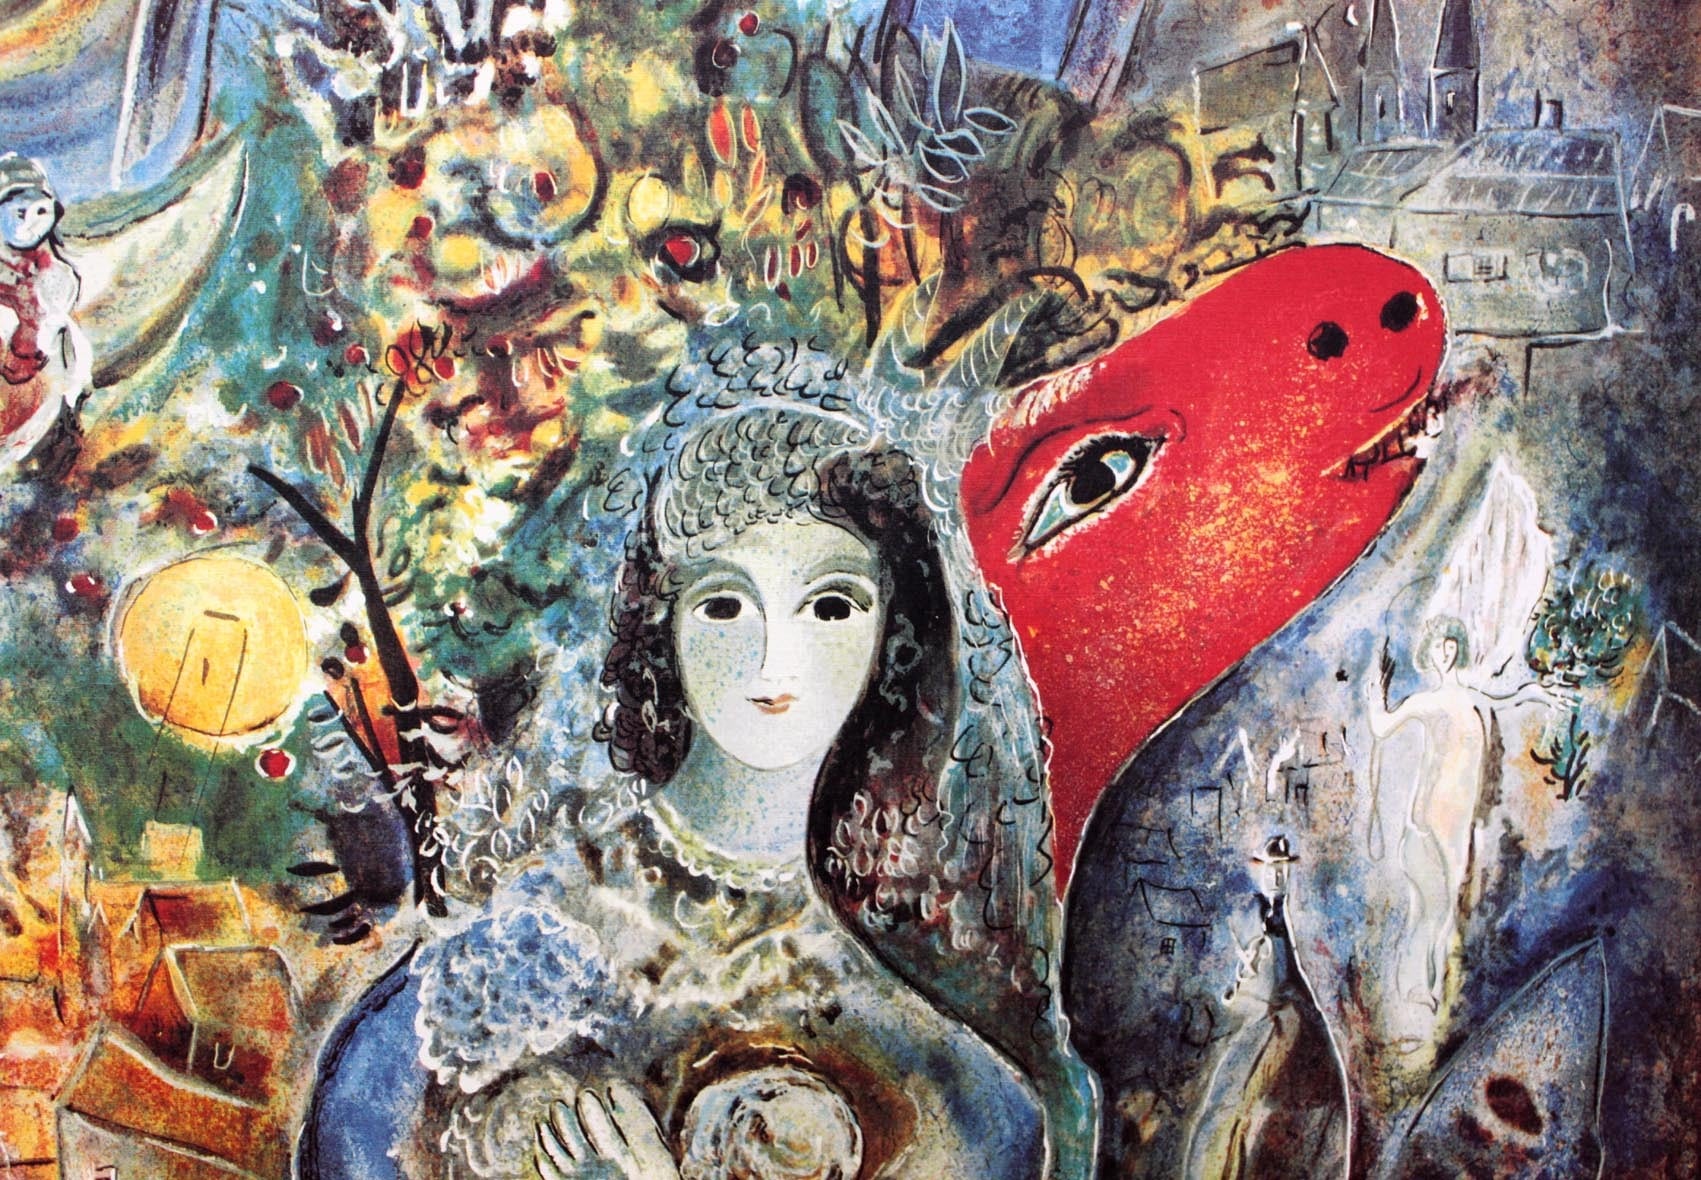 マルク・シャガール作品「愛しのベラ」作品証明書・展示用フック・限定500部エディション付複製画リトグラ